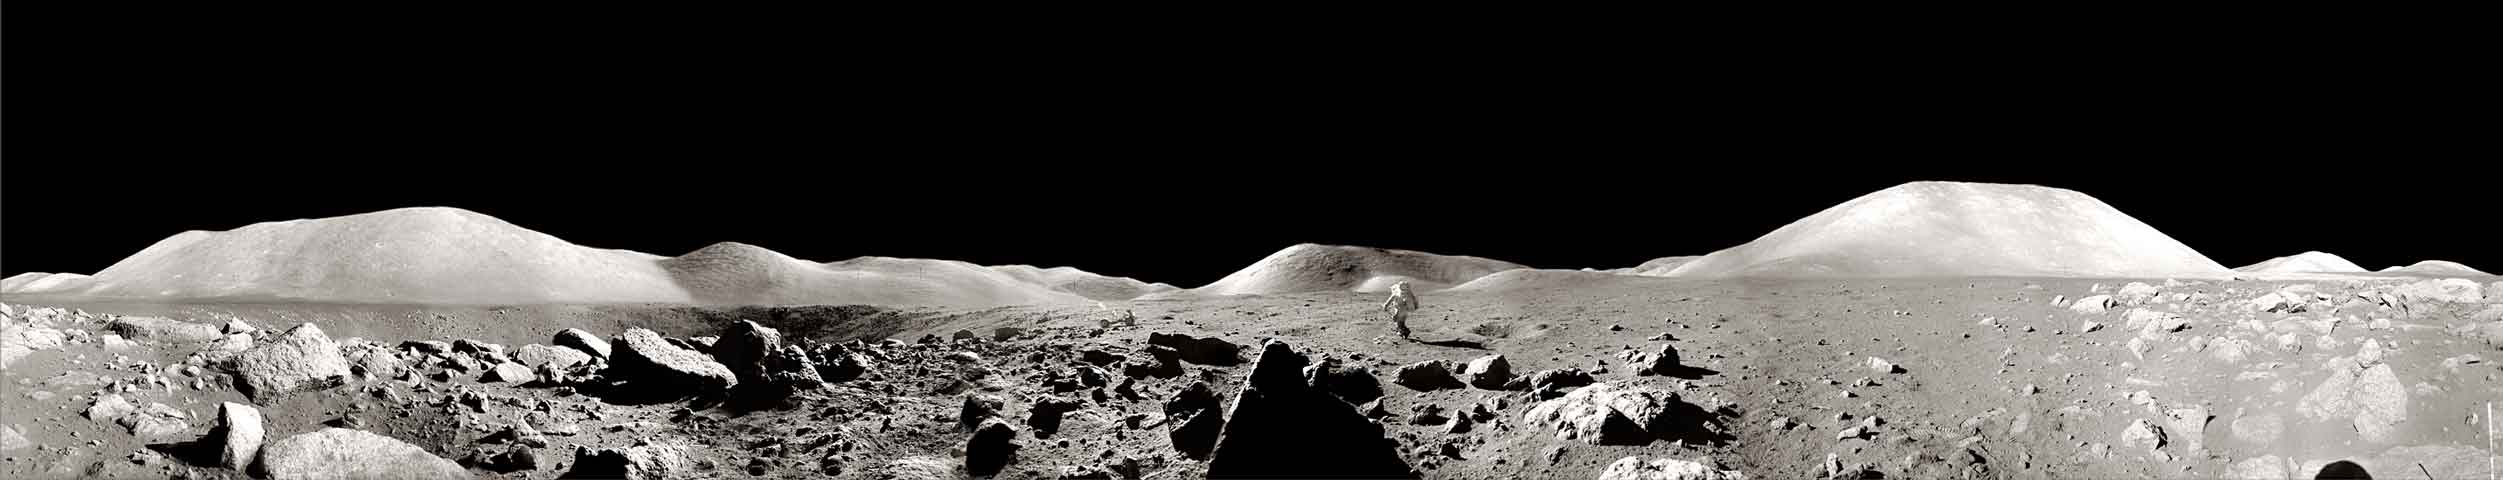 Panorama lunar captado por la misión Apolo 17